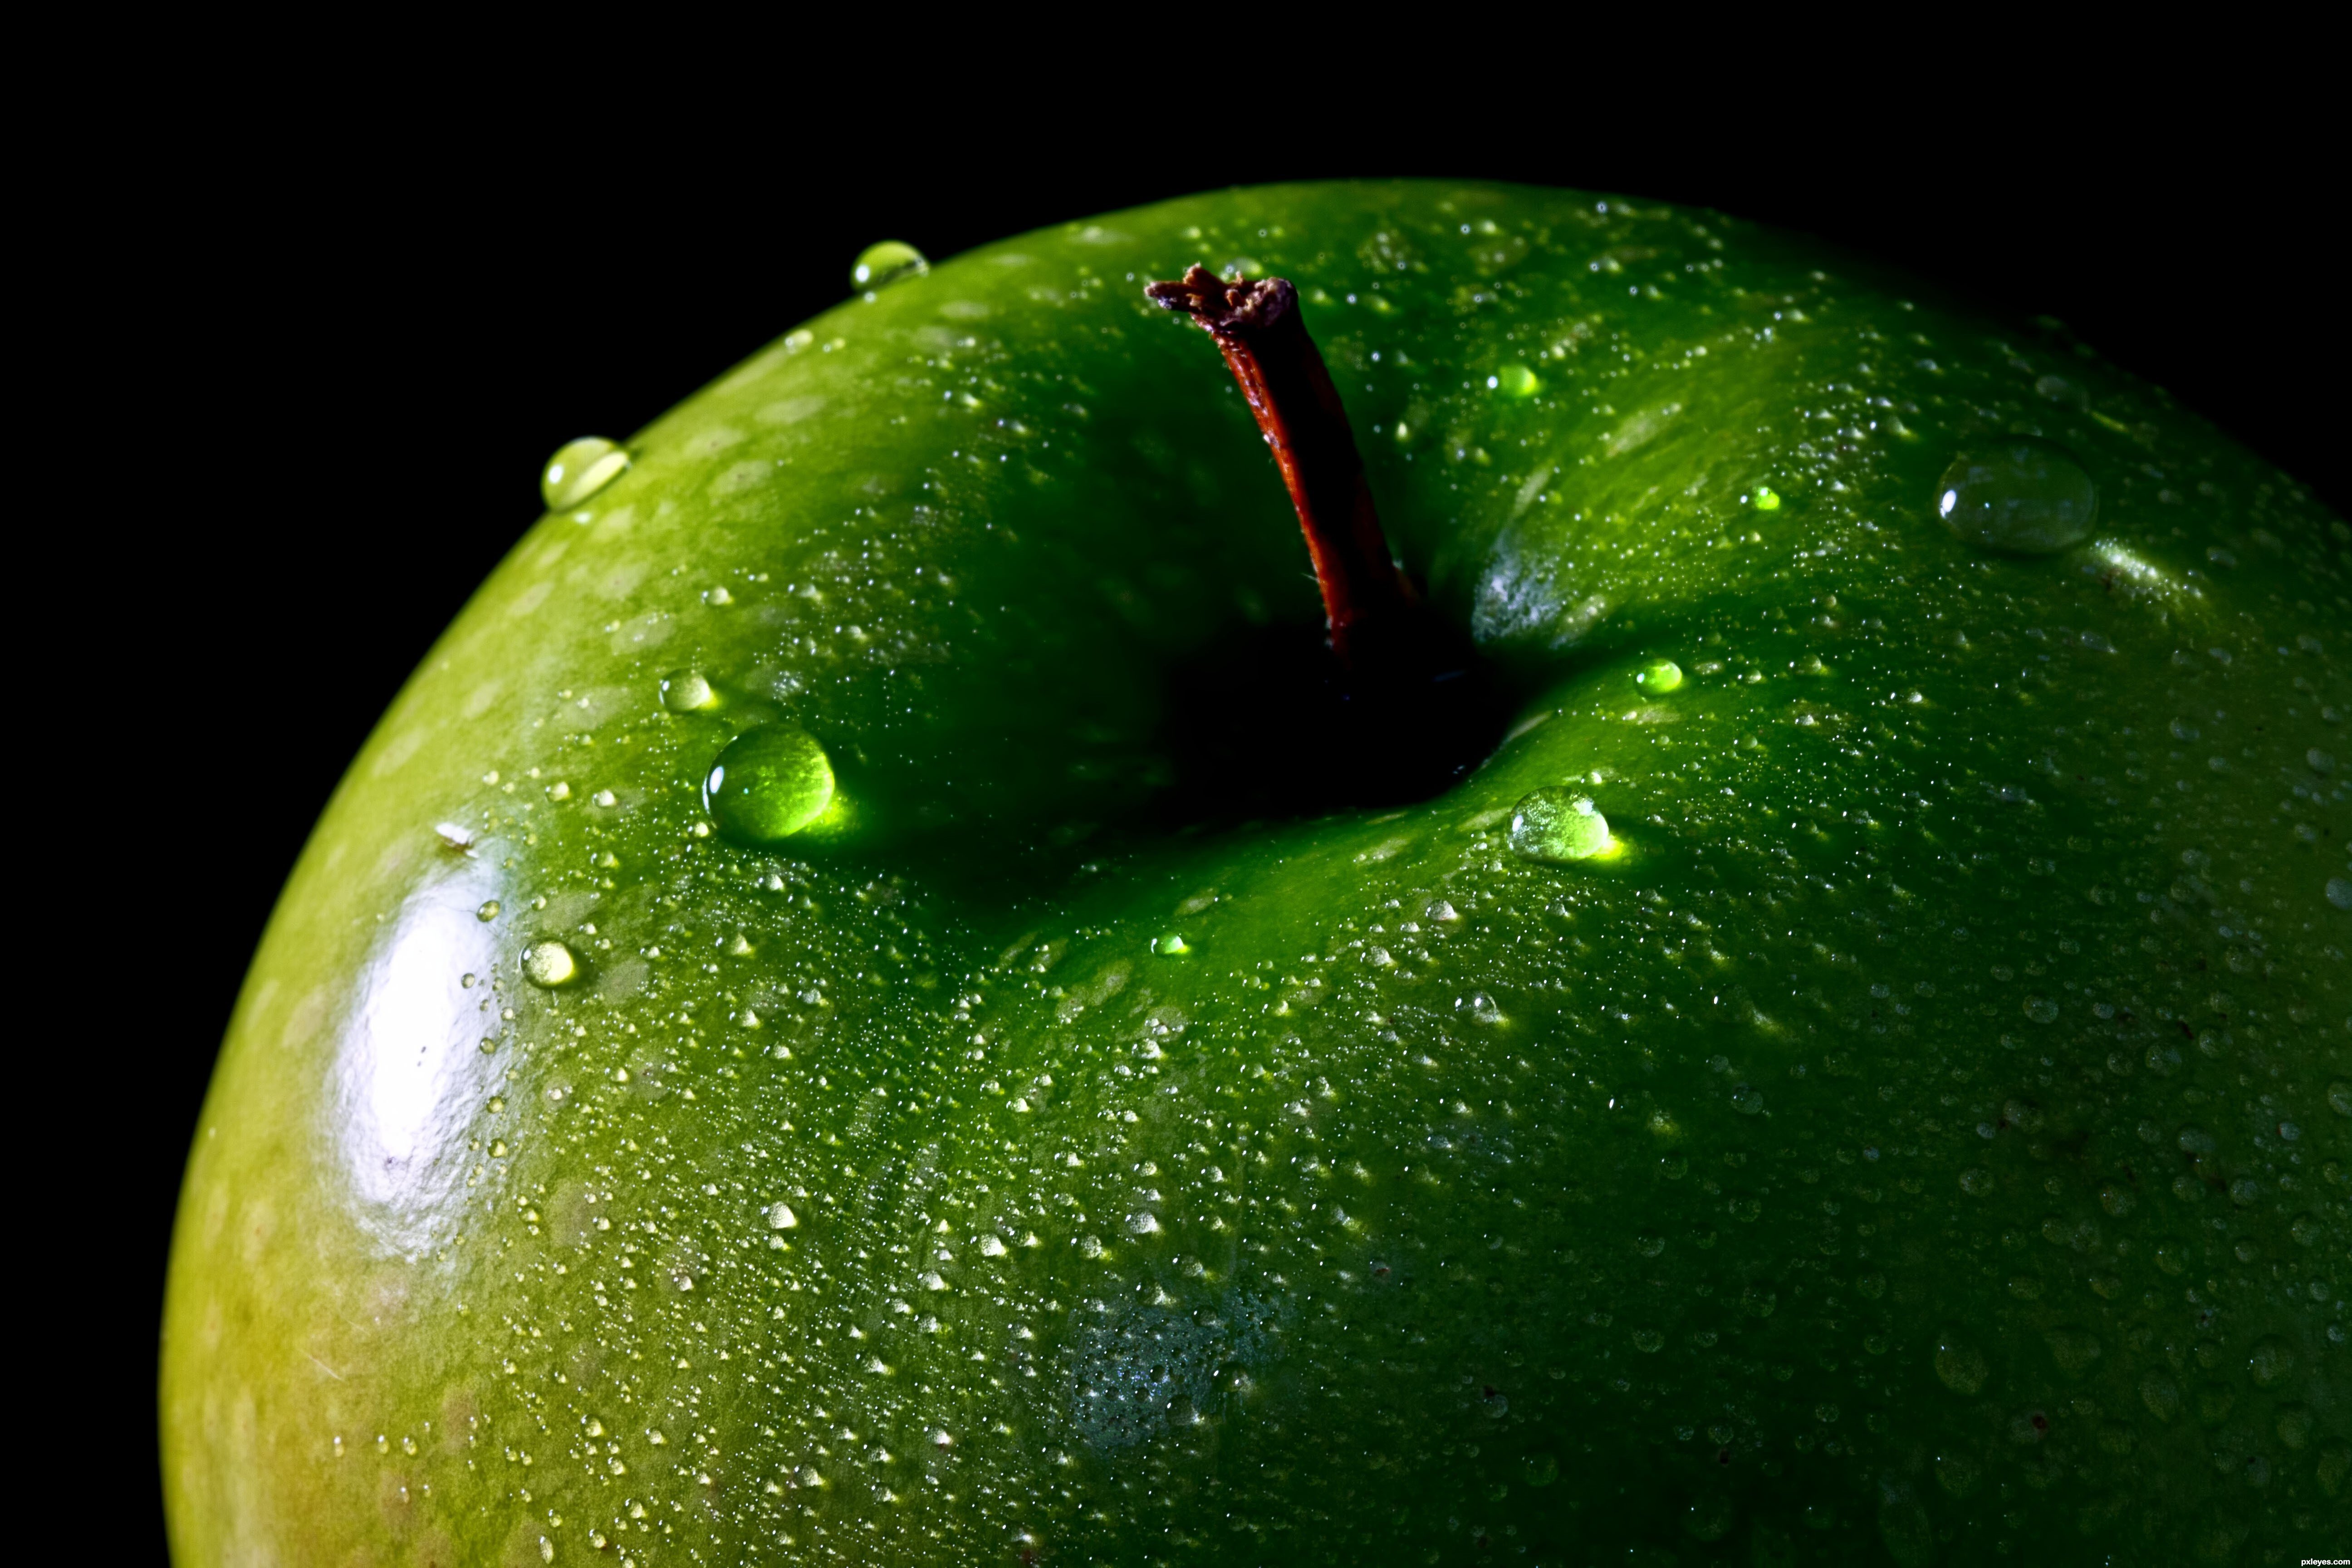 Яблоко на черном фоне. Эпл Грин яблоко. Яблоки зеленые. Яблочно зеленый цвет. Сочный зеленый цвет.